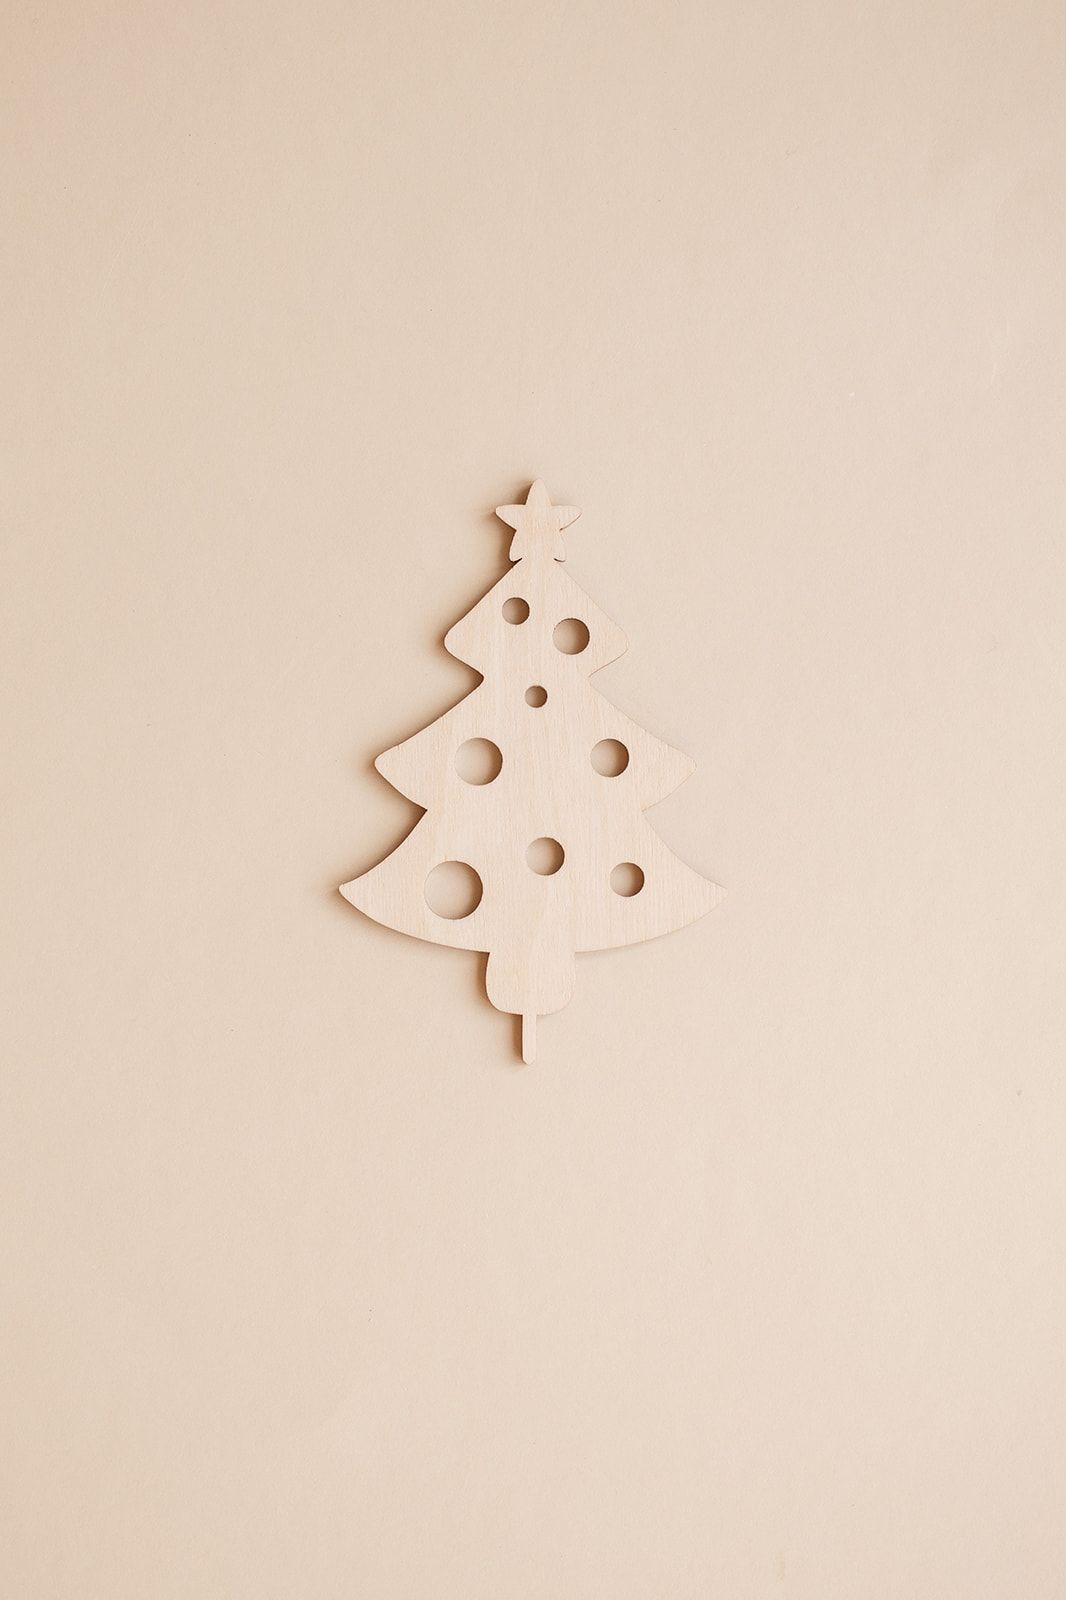 Weihnachtsbaum Stecker für den Adventskranz aus Holz.